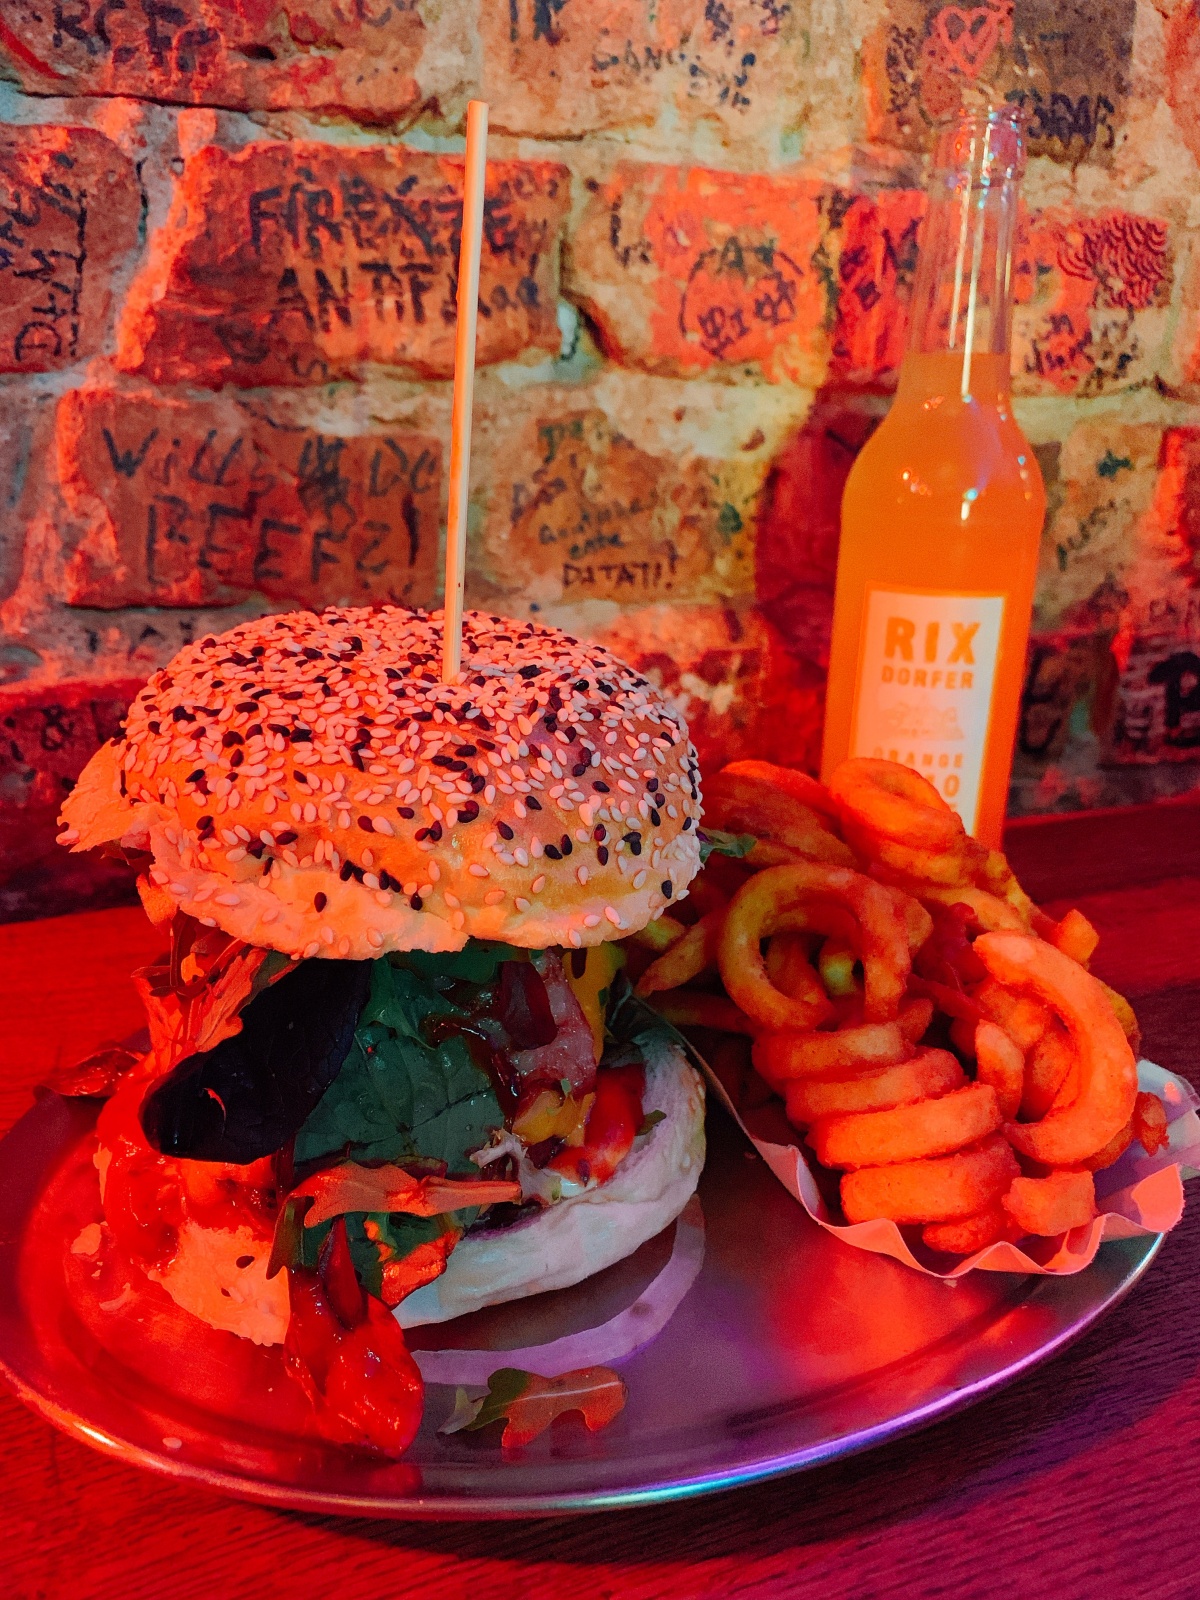 ⧈ 德國食記│柏林【Berlinburger International】- 好吃漢堡